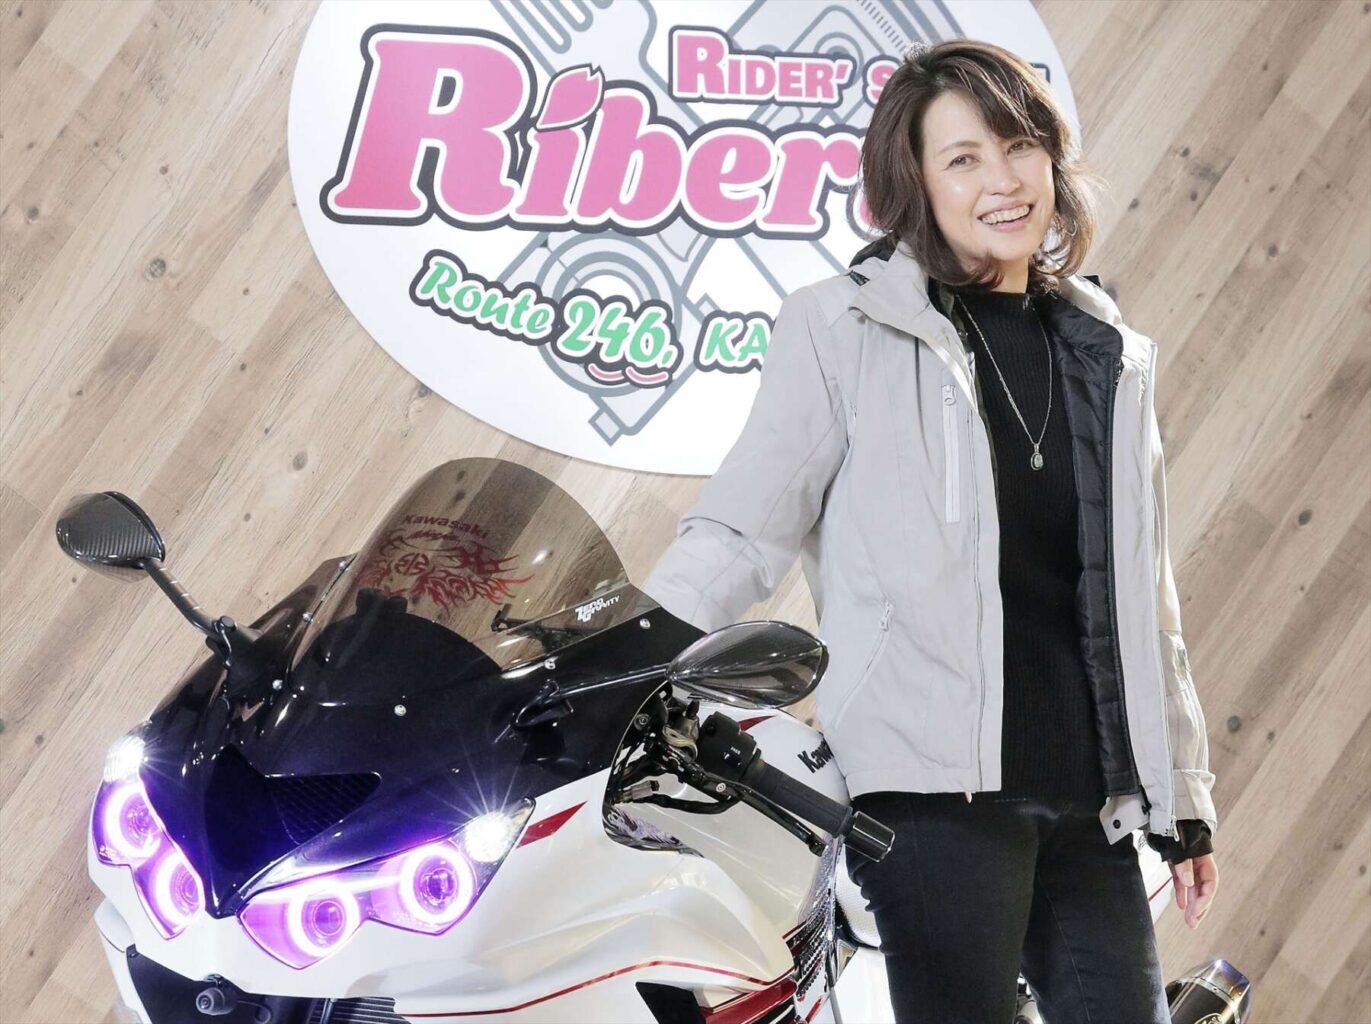 Rider's BASE Riberty